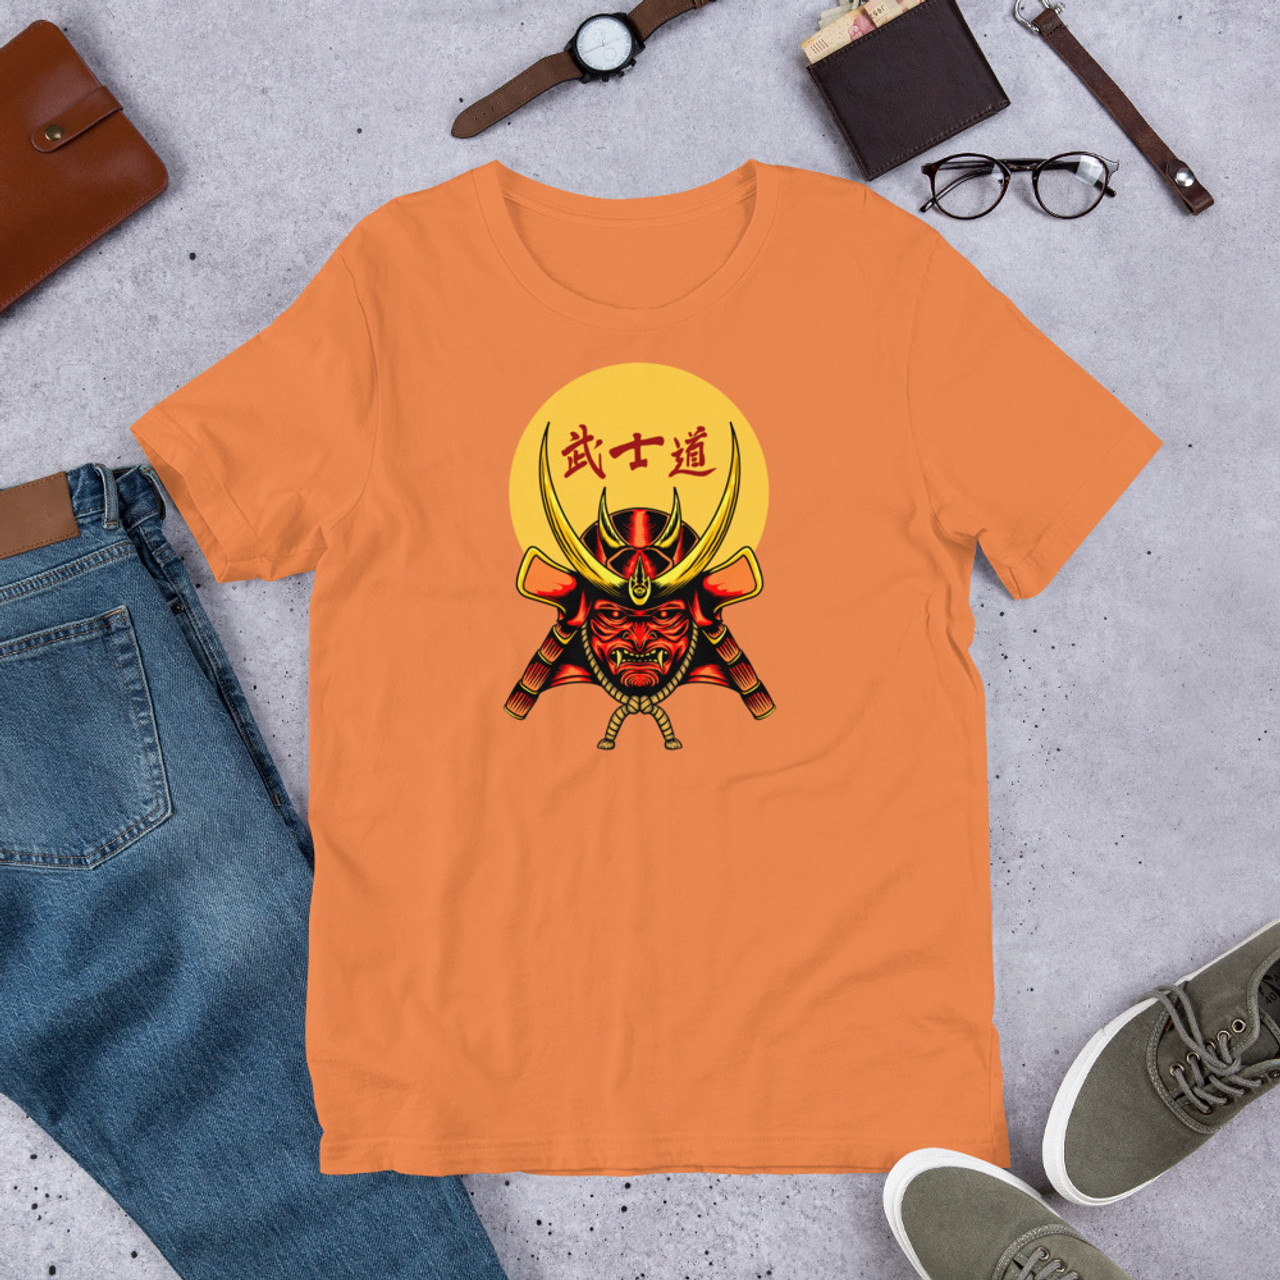 Burnt Orange T-Shirt - Bella + Canvas 3001 Samurai 8